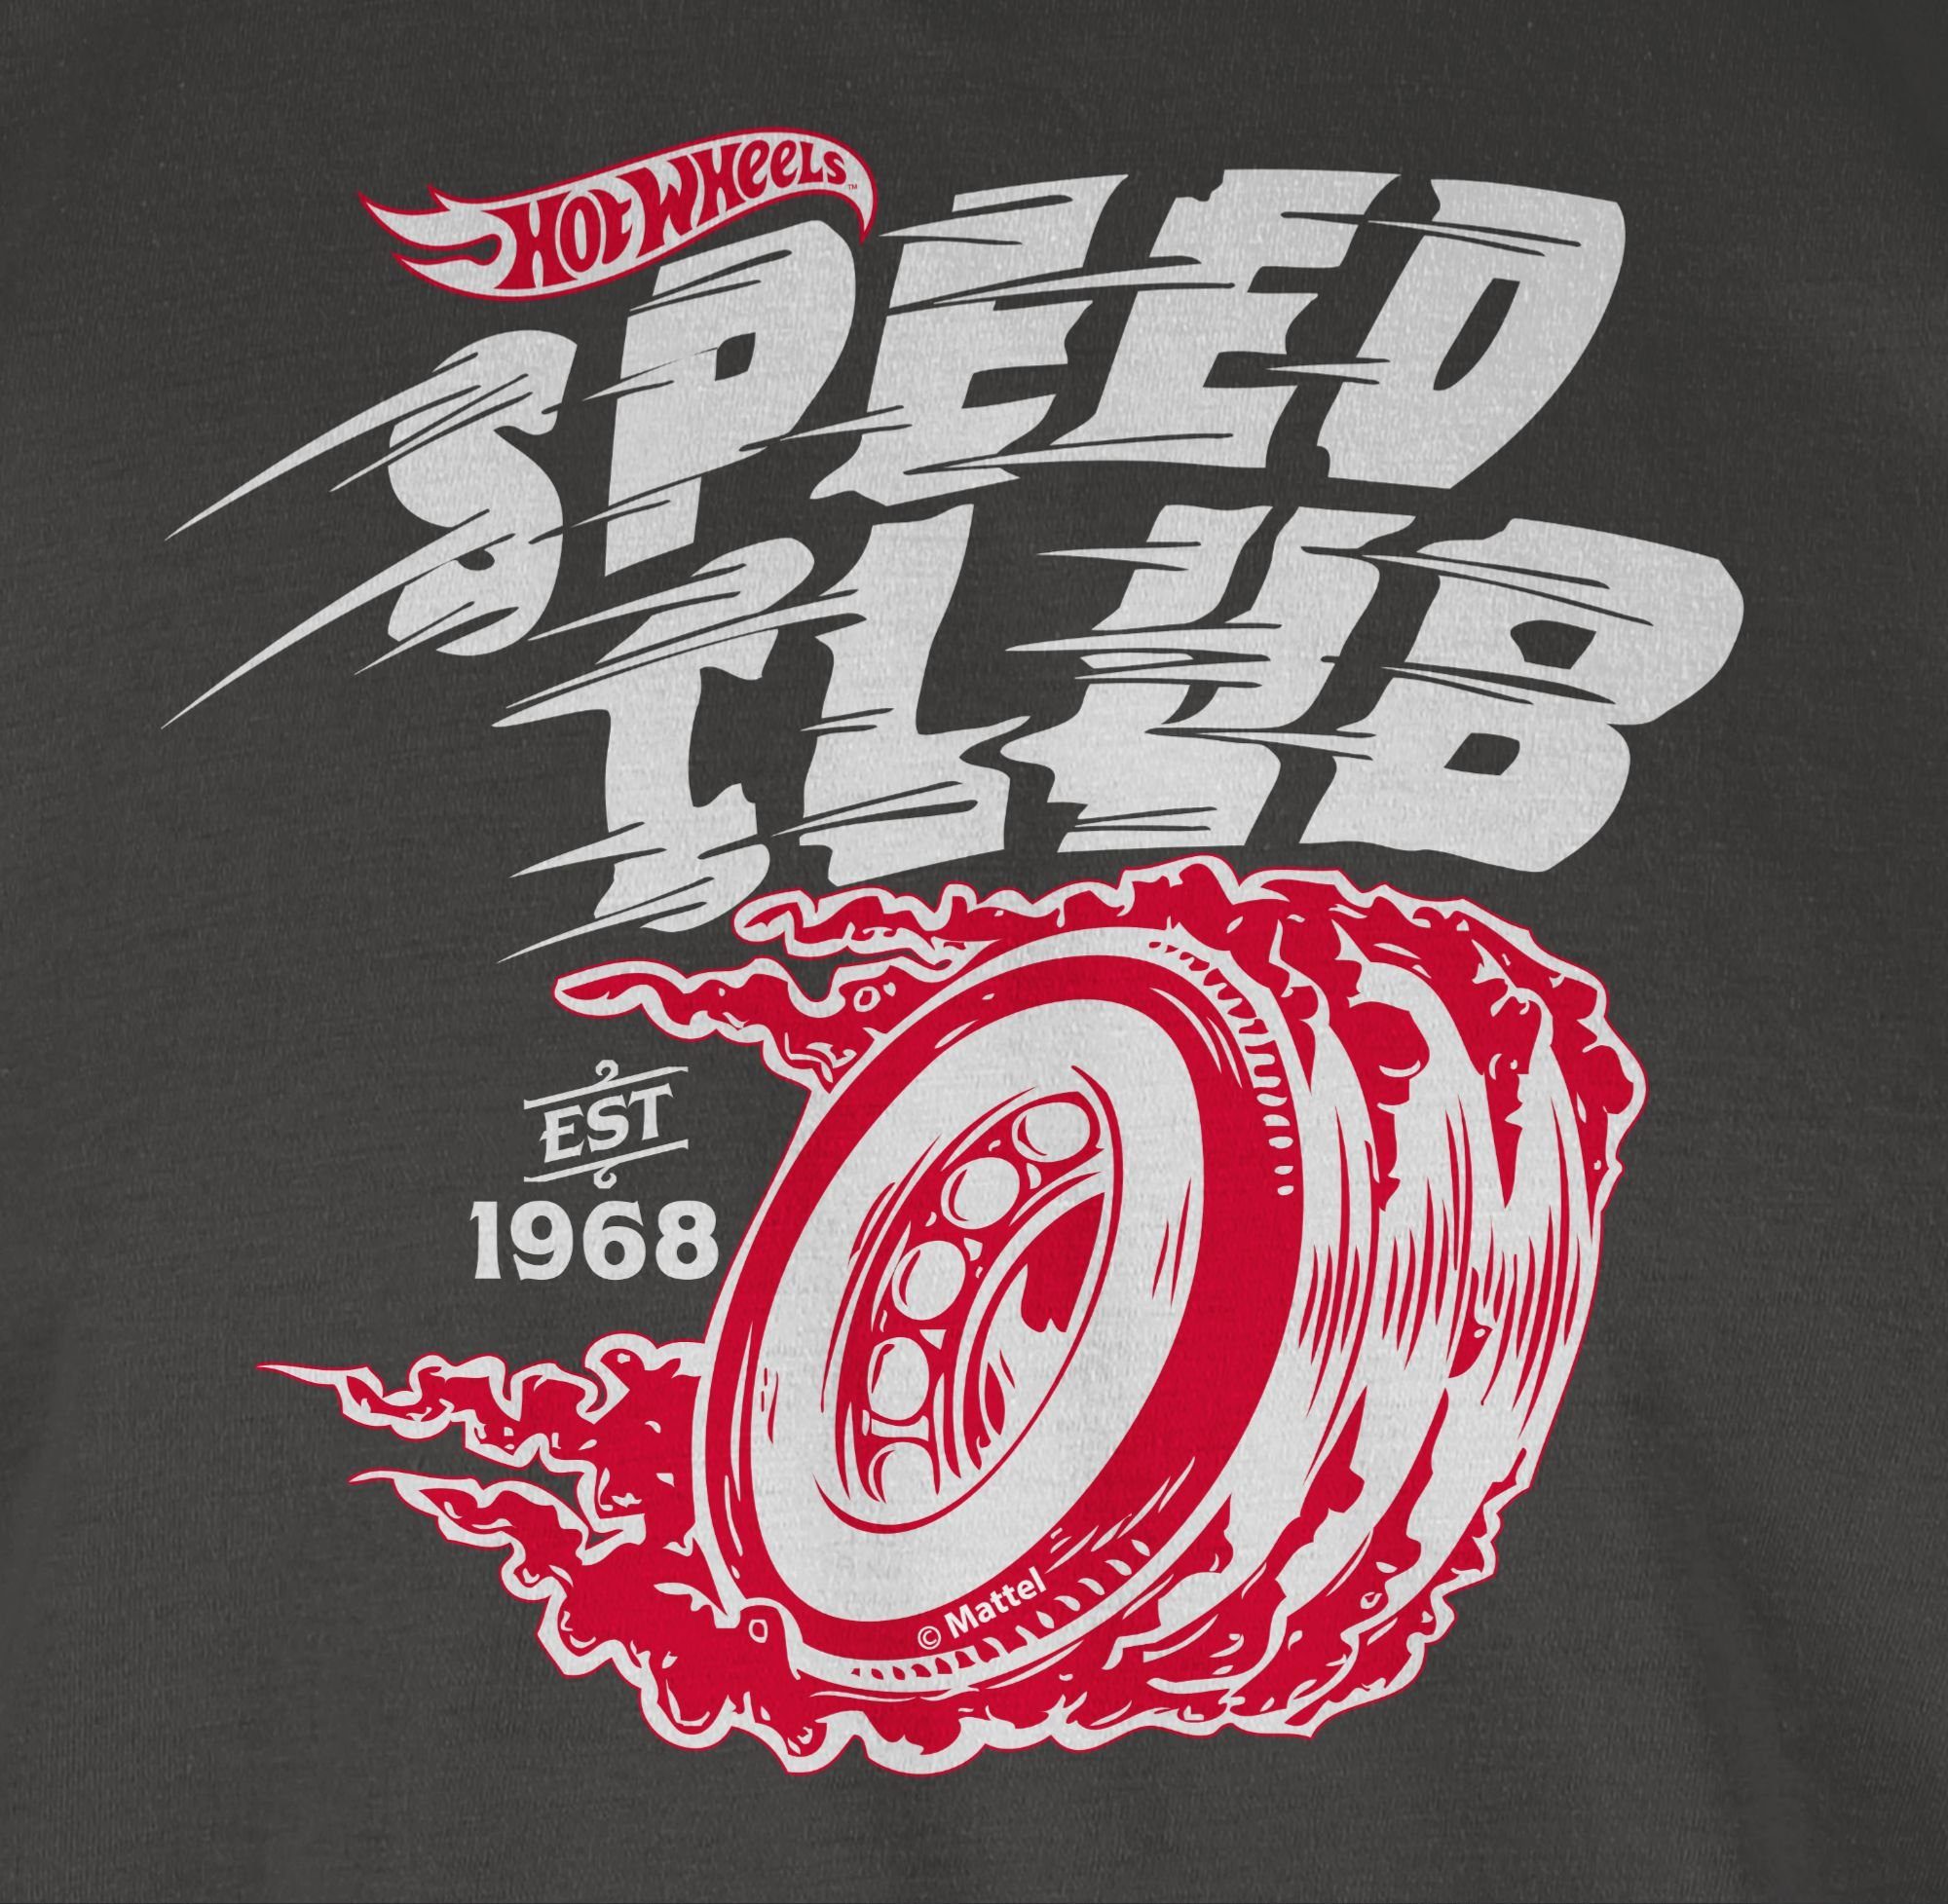 Wheels - Shirtracer 01 weiß/rot Club Herren Hot Dunkelgrau T-Shirt Speed